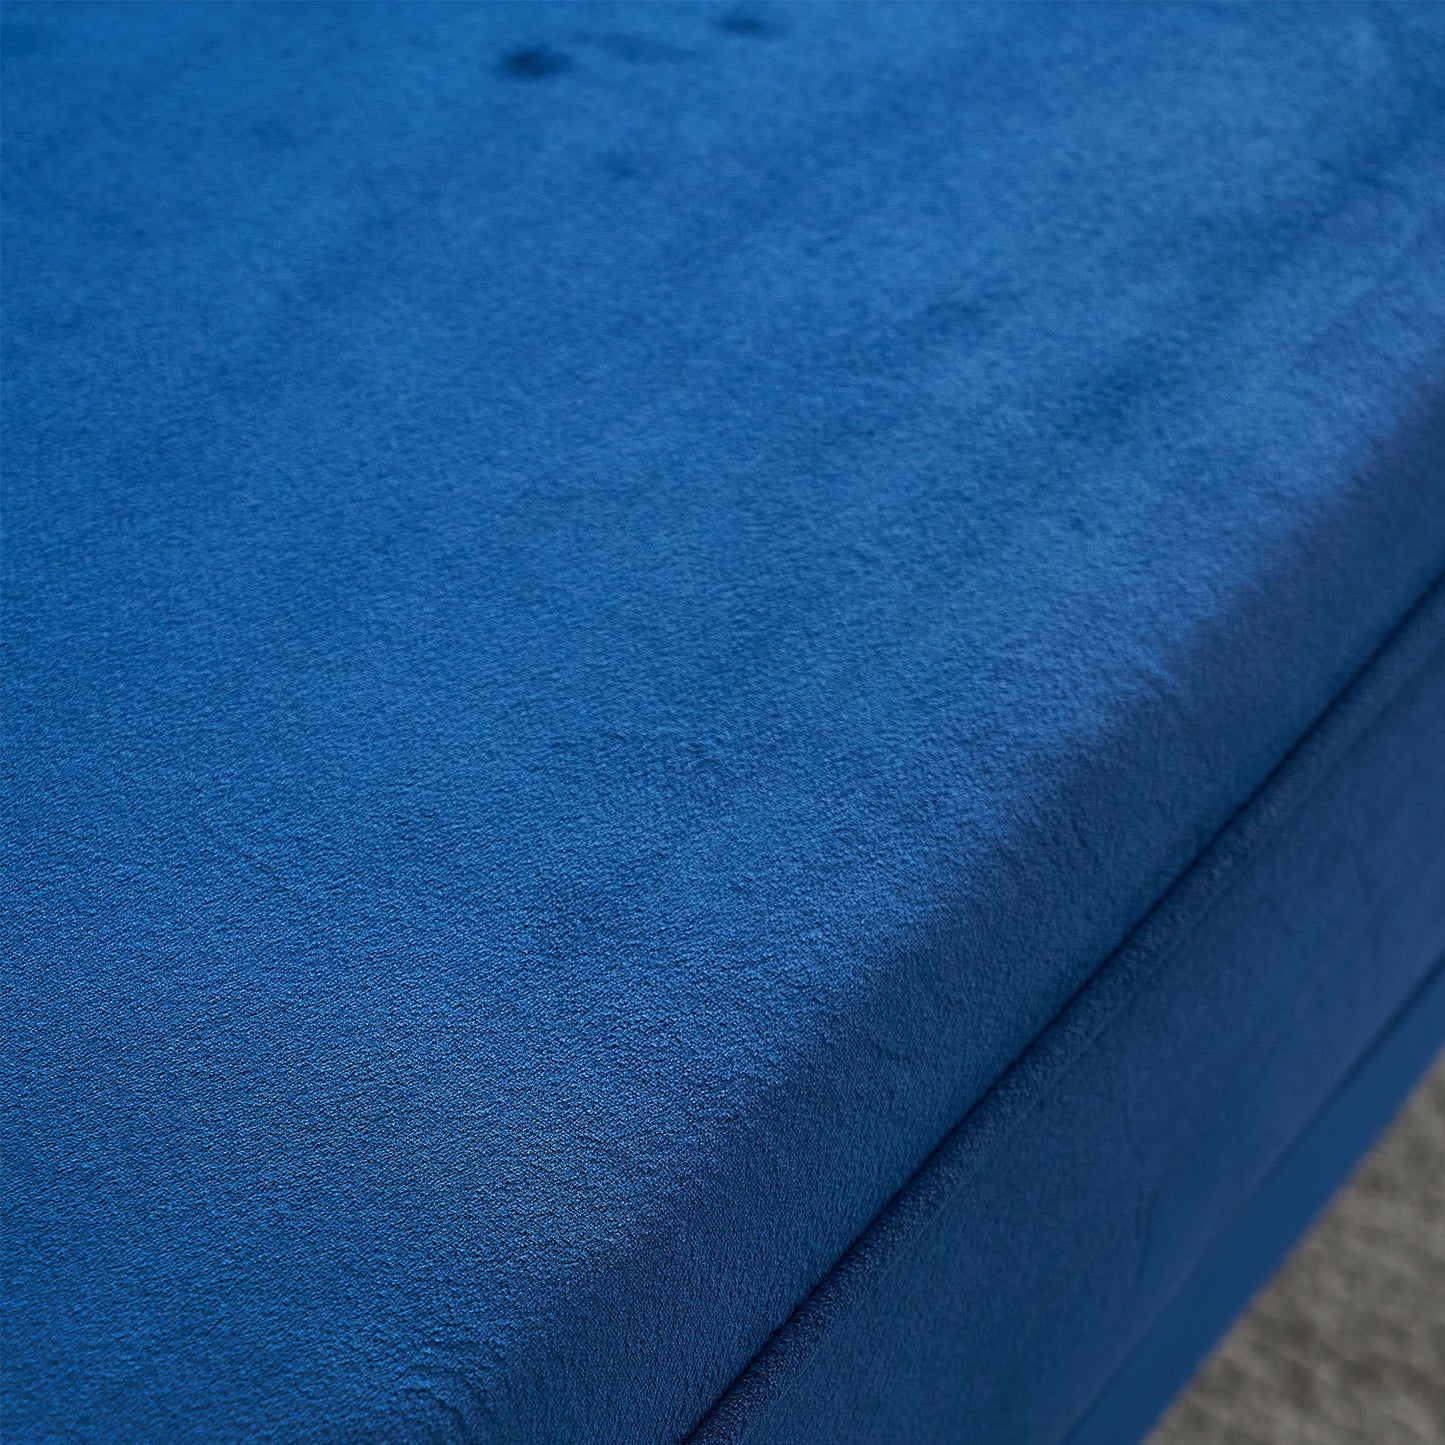 Modern Tufted Velvet Sofa 87.4 inch for Living Room Blue Color